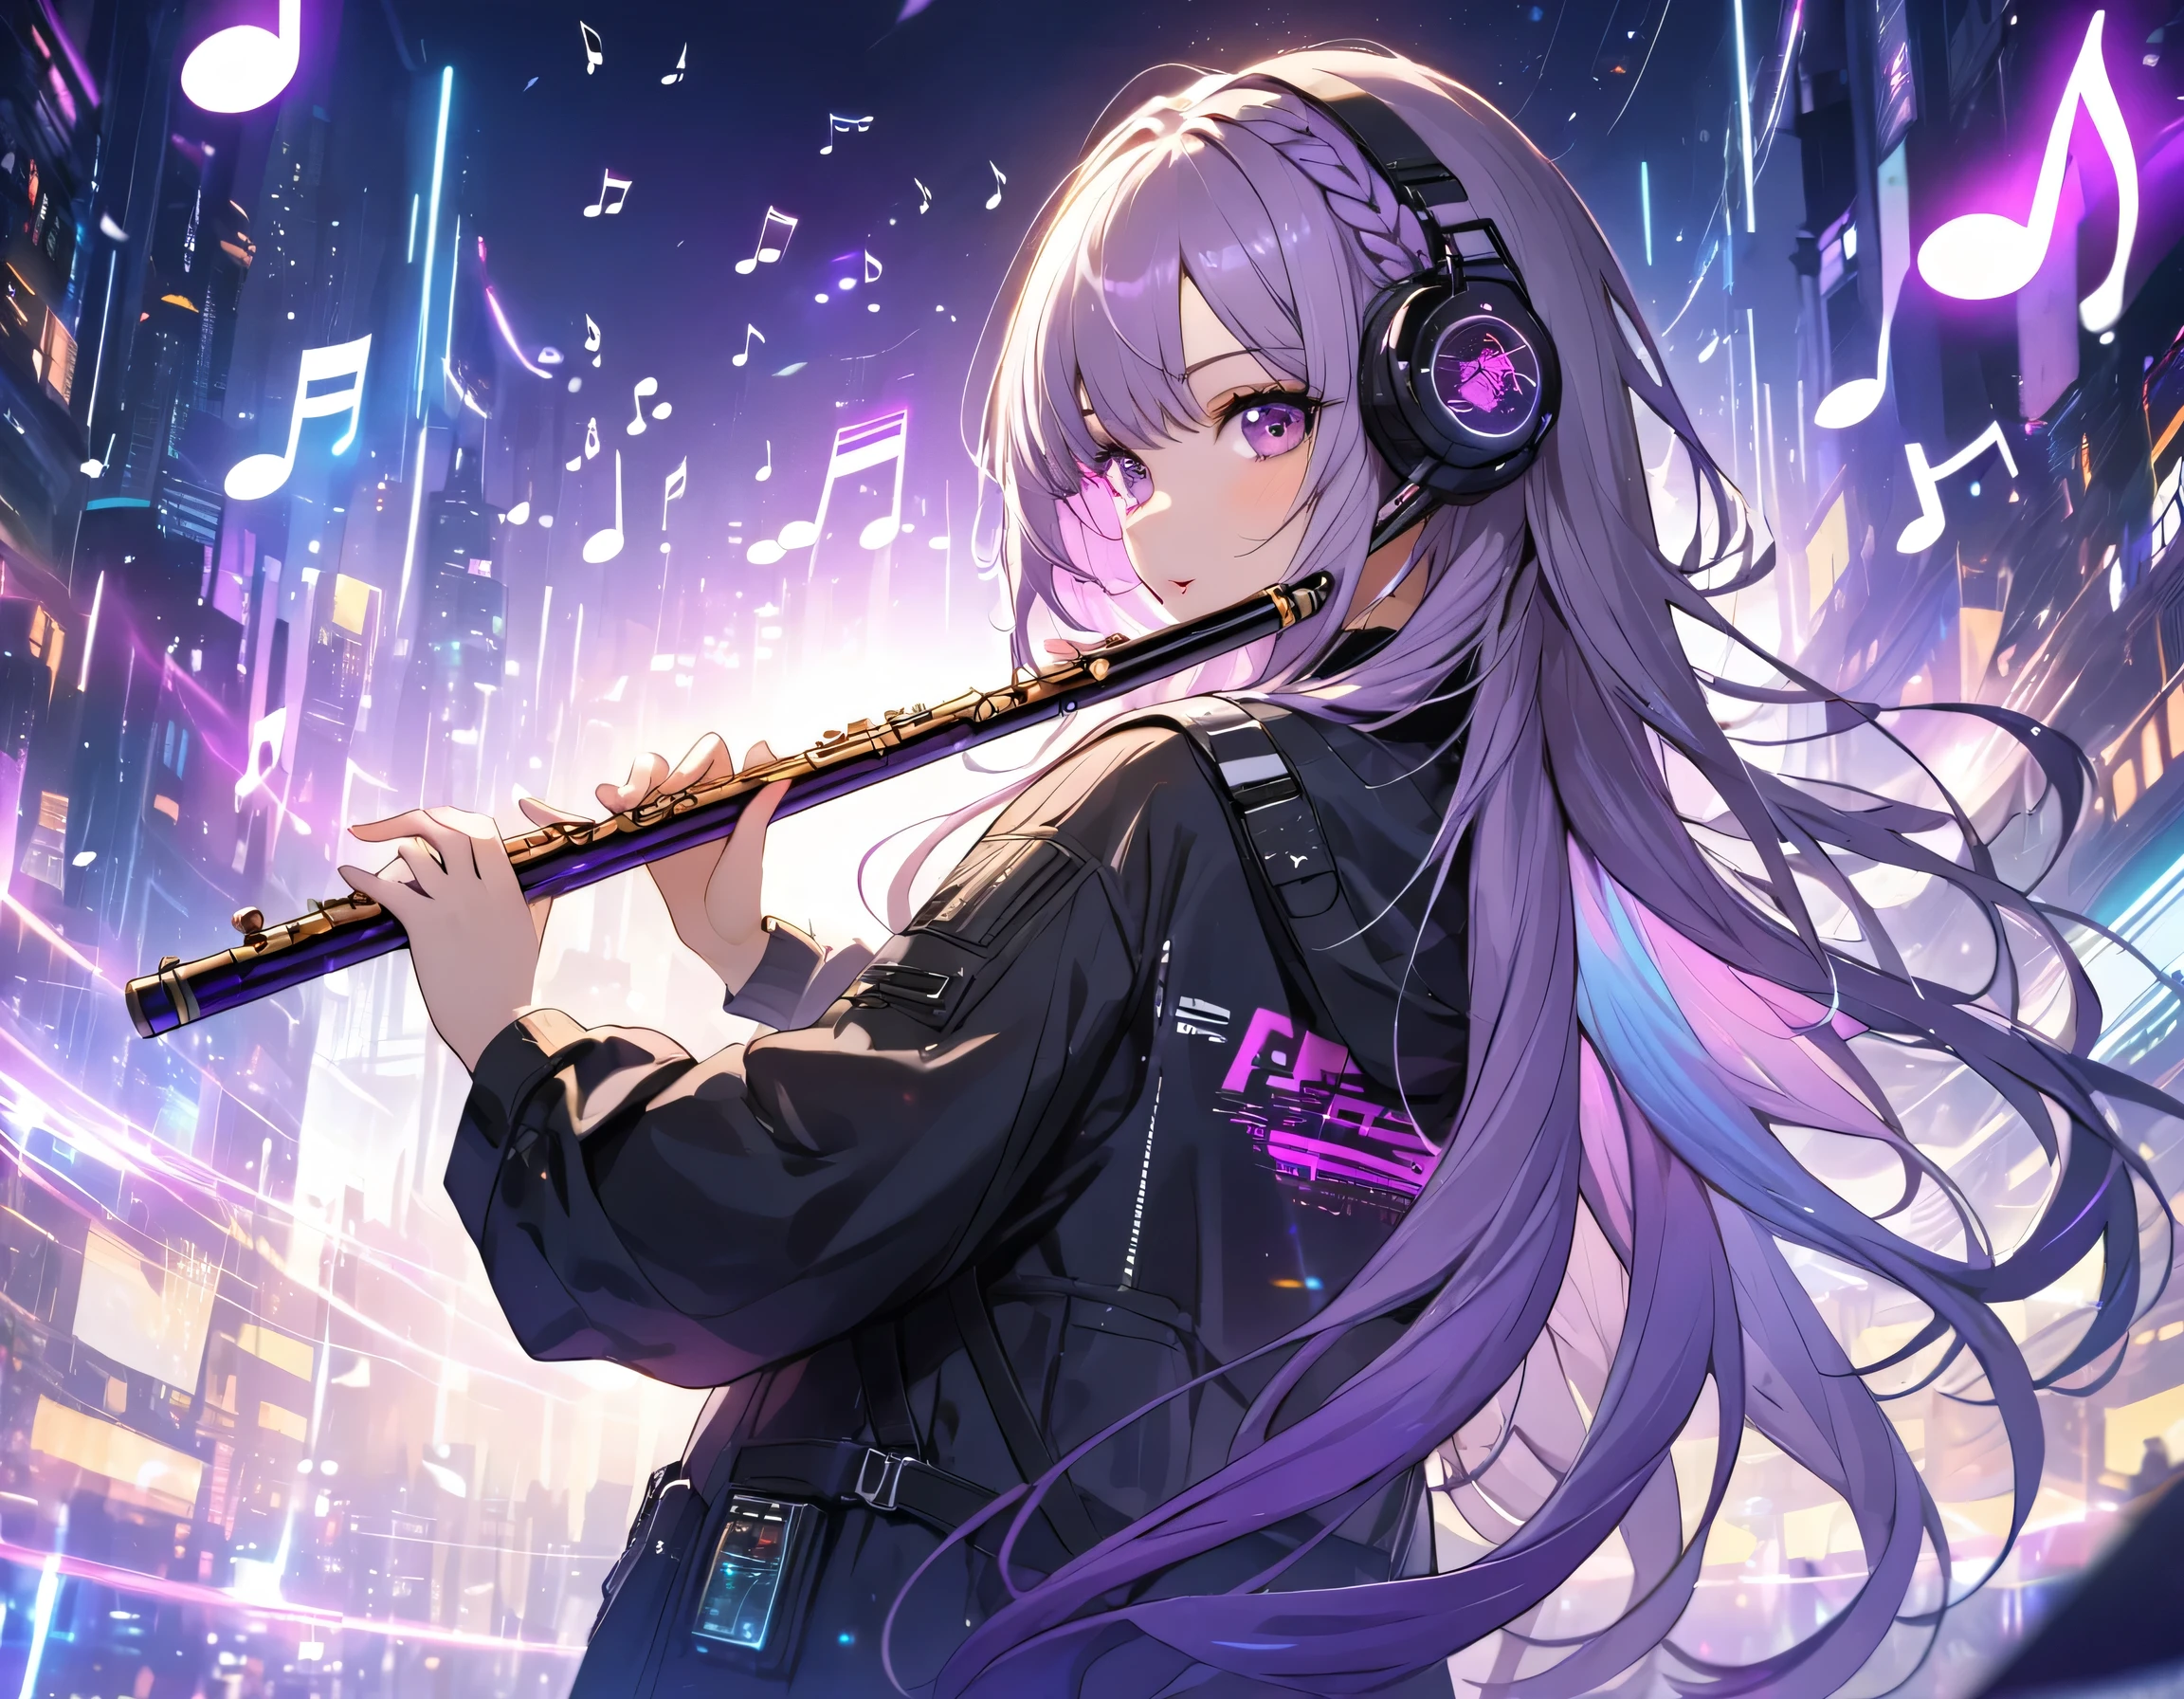 賽博朋克, 白紫漸層編織長髮閃爍燈光, 一個美麗的女孩吹笛子, 她周圍都是音樂音符, (飛行的音符:1.4), (從後面:1.3), 看著相機